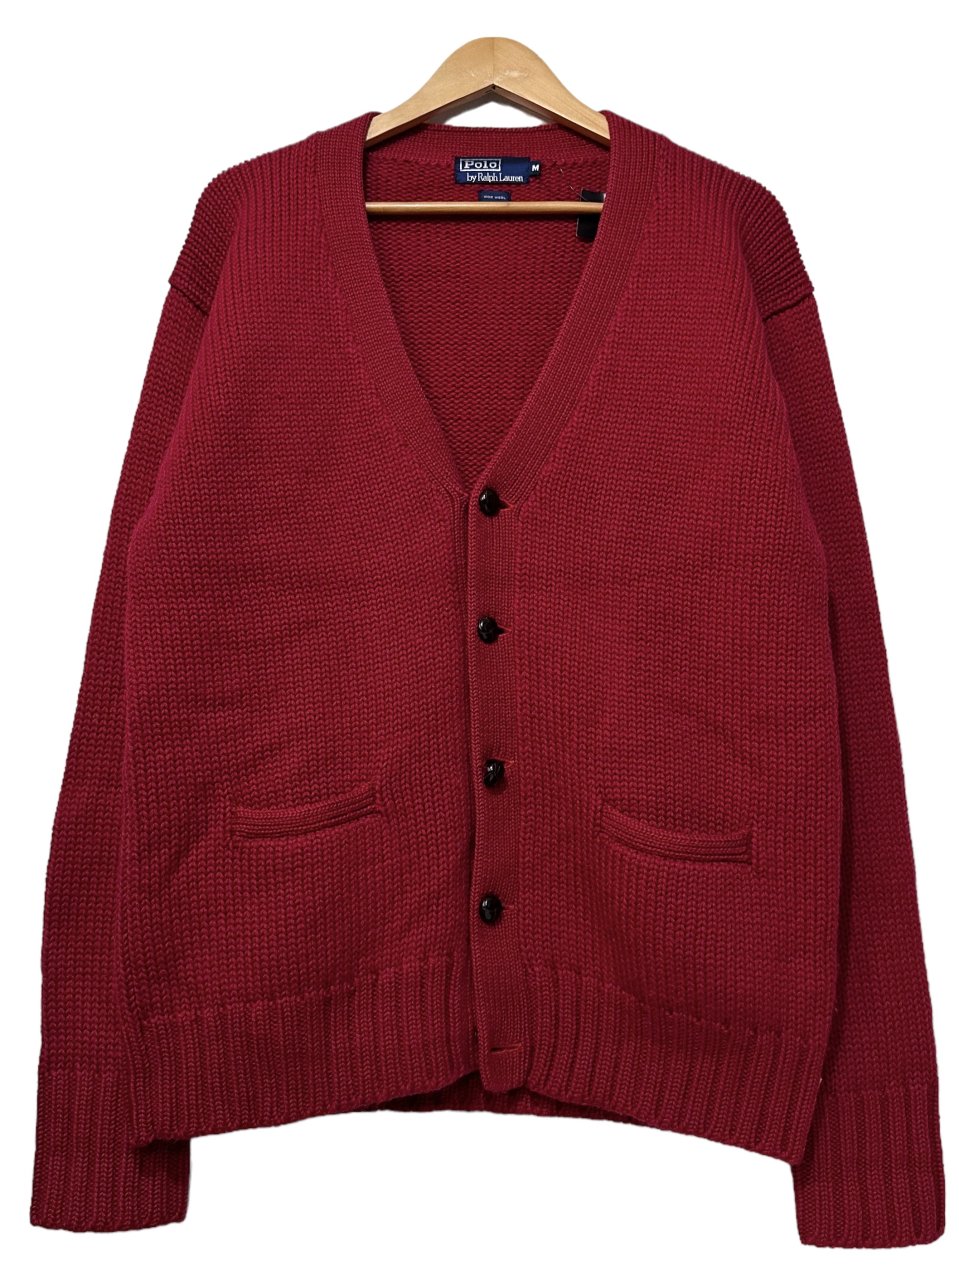 90s Polo Ralph Lauren Wool Knit Cardigan 赤 M ポロラルフ